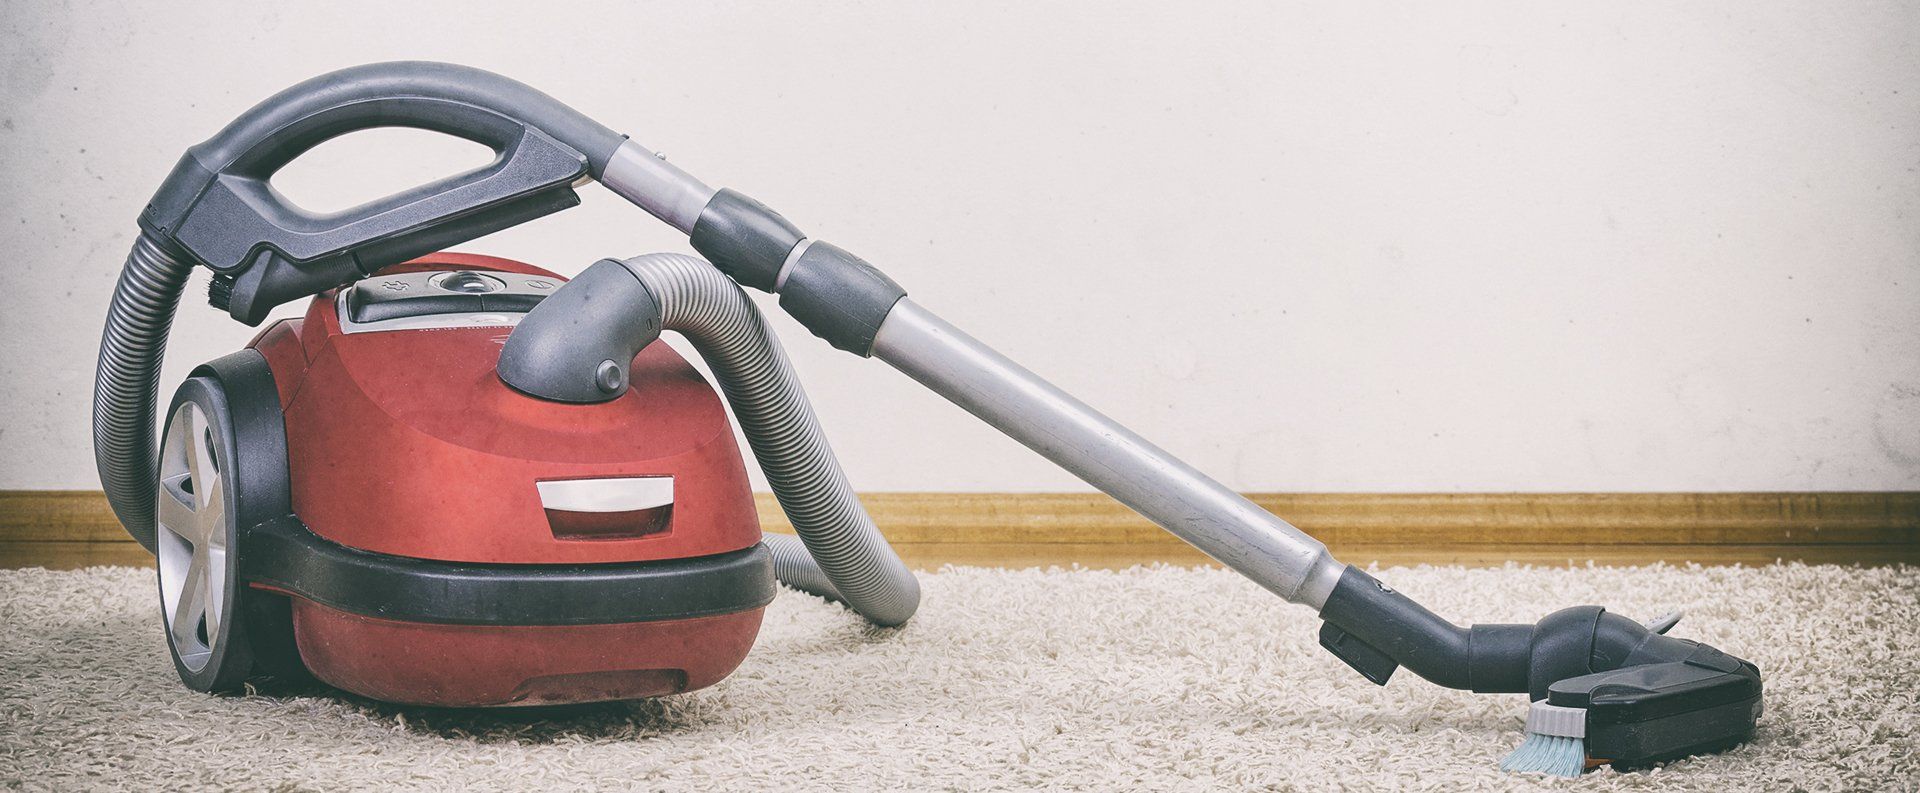 Vacuum cleaning